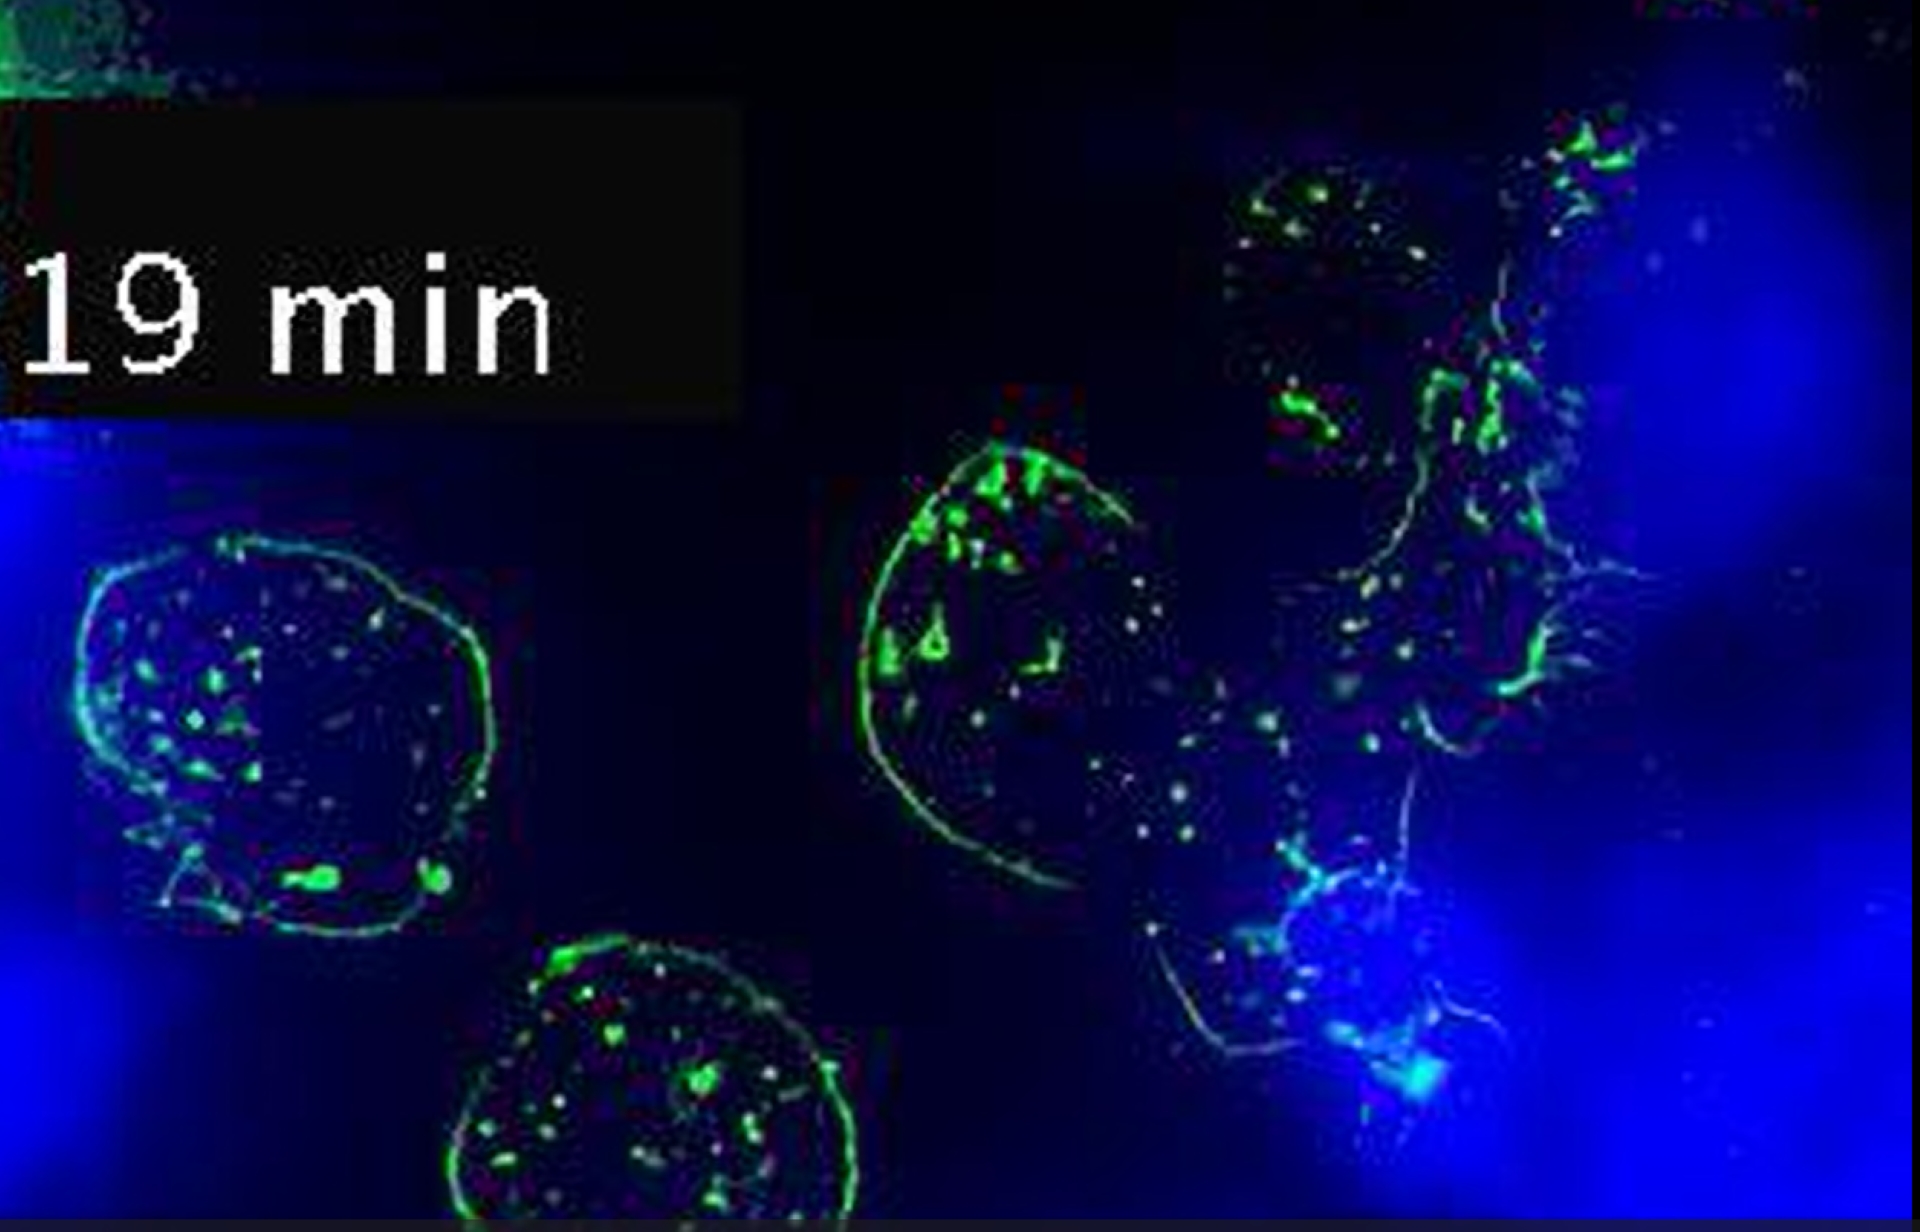 Imágenes de linfocitos interactuando marcados en azul y verde sobre fondo blanco.